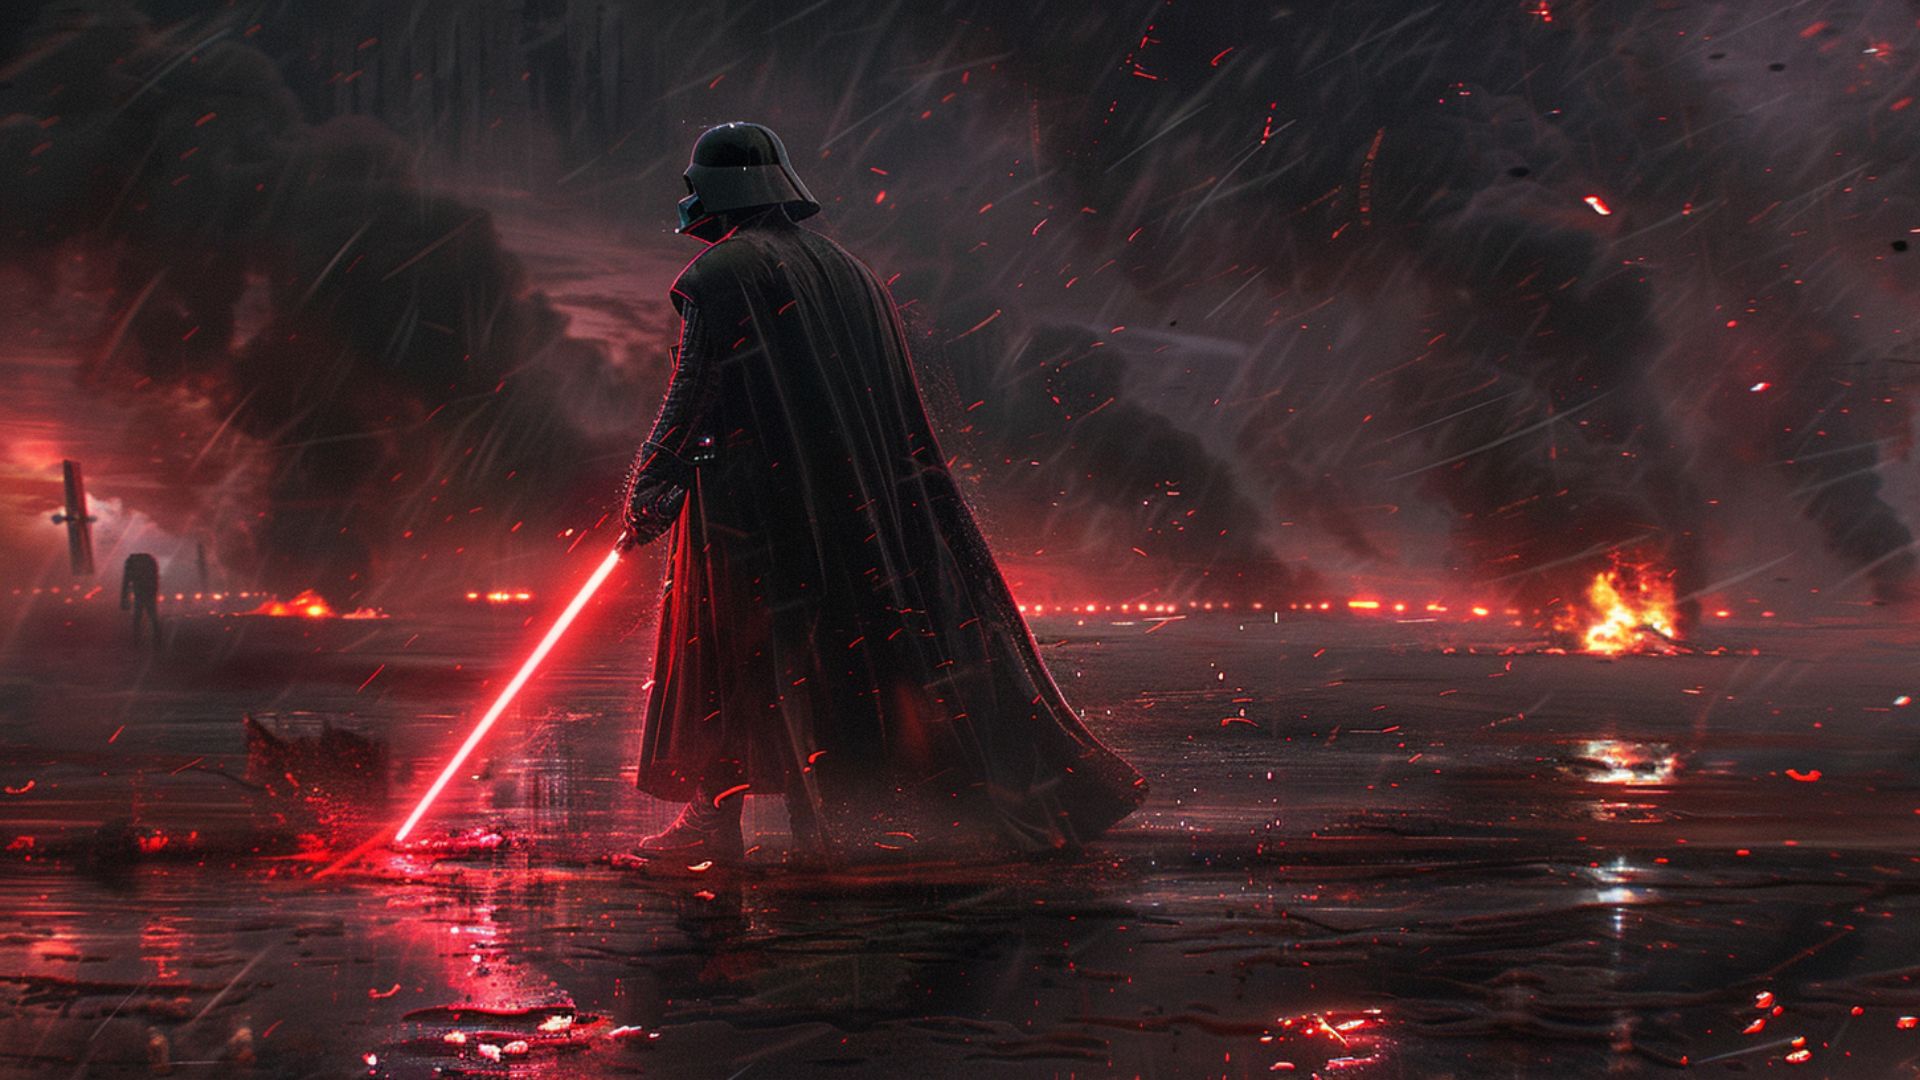 Darth Vader wallpaper from Star Wars